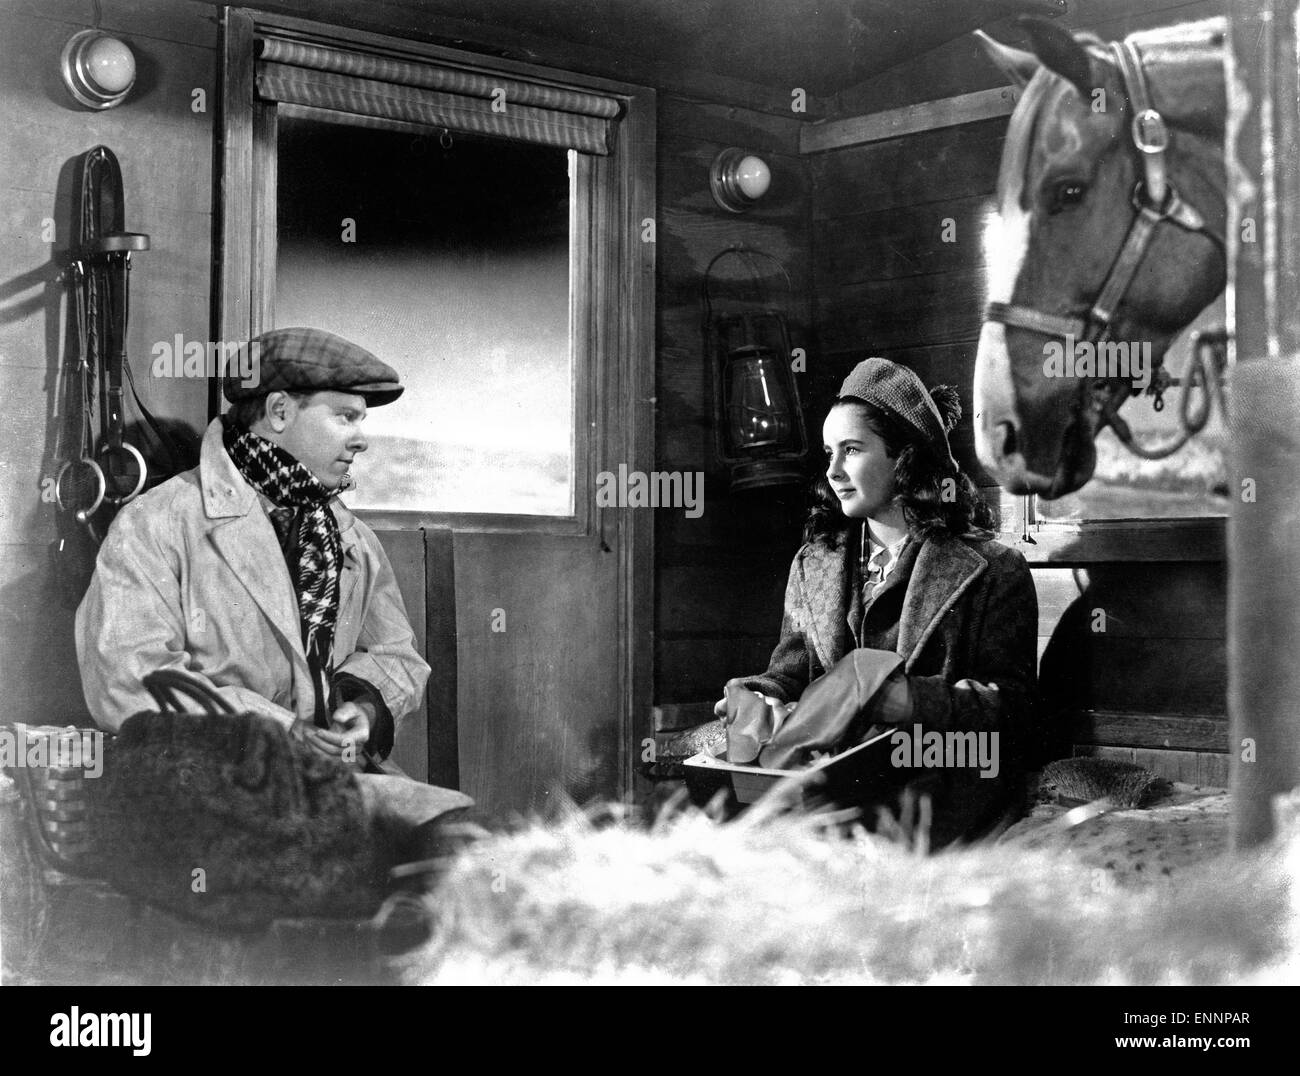 National Velvet, aka Kleines Mädchen, großes Herz, USA, 1944, Regie: Clarence Brown, Darsteller: Elizabeth Taylor, Mickey Rooney Stock Photo